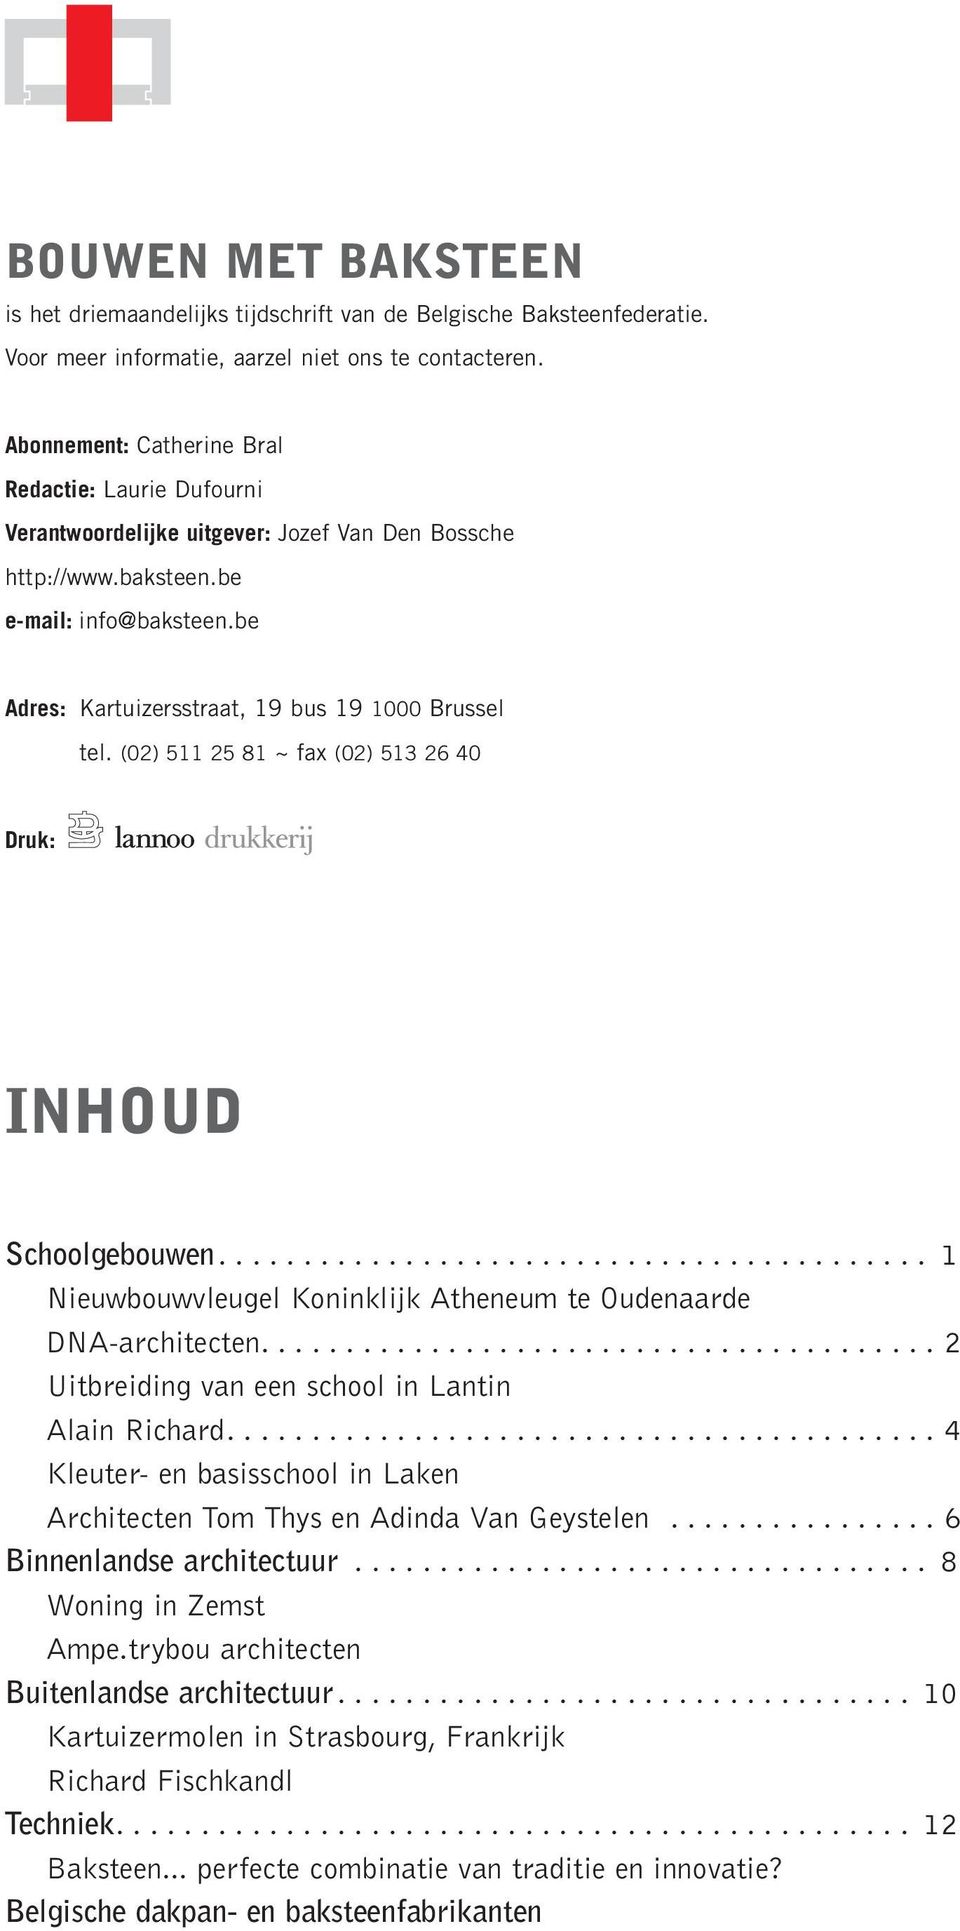 be Adres: Kartuizersstraat, 19 bus 19 1000 Brussel tel. (02) 511 25 81 ~ fax (02) 513 26 40 Druk: inhoud Schoolgebouwen.......................................... 1 Nieuwbouwvleugel Koninklijk Atheneum te Oudenaarde DNA-architecten.